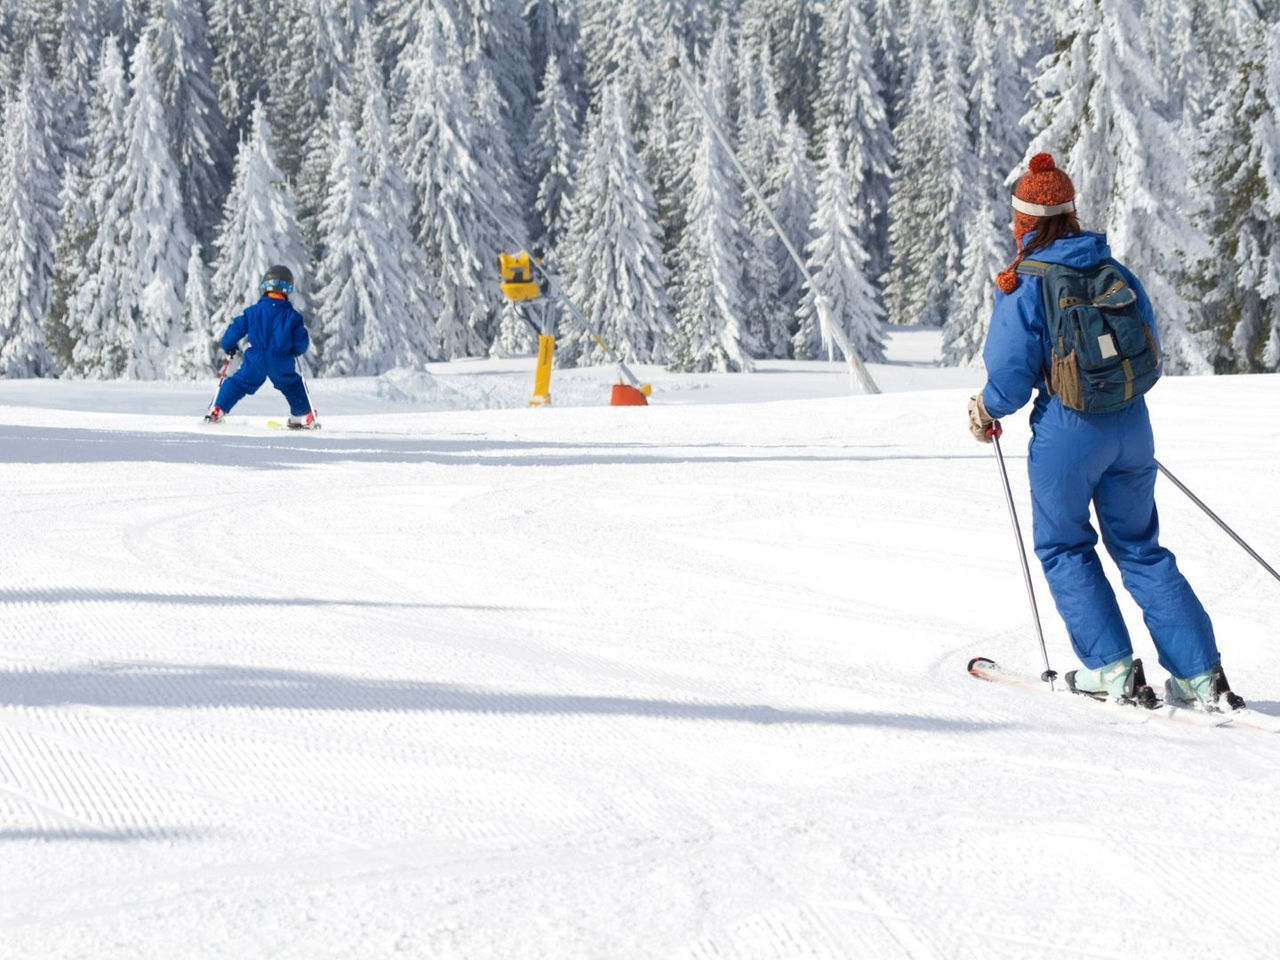 Wintersport: Verletzungen vorbeugen - Damit der Spaß im Schnee nicht schmerzhaft endet